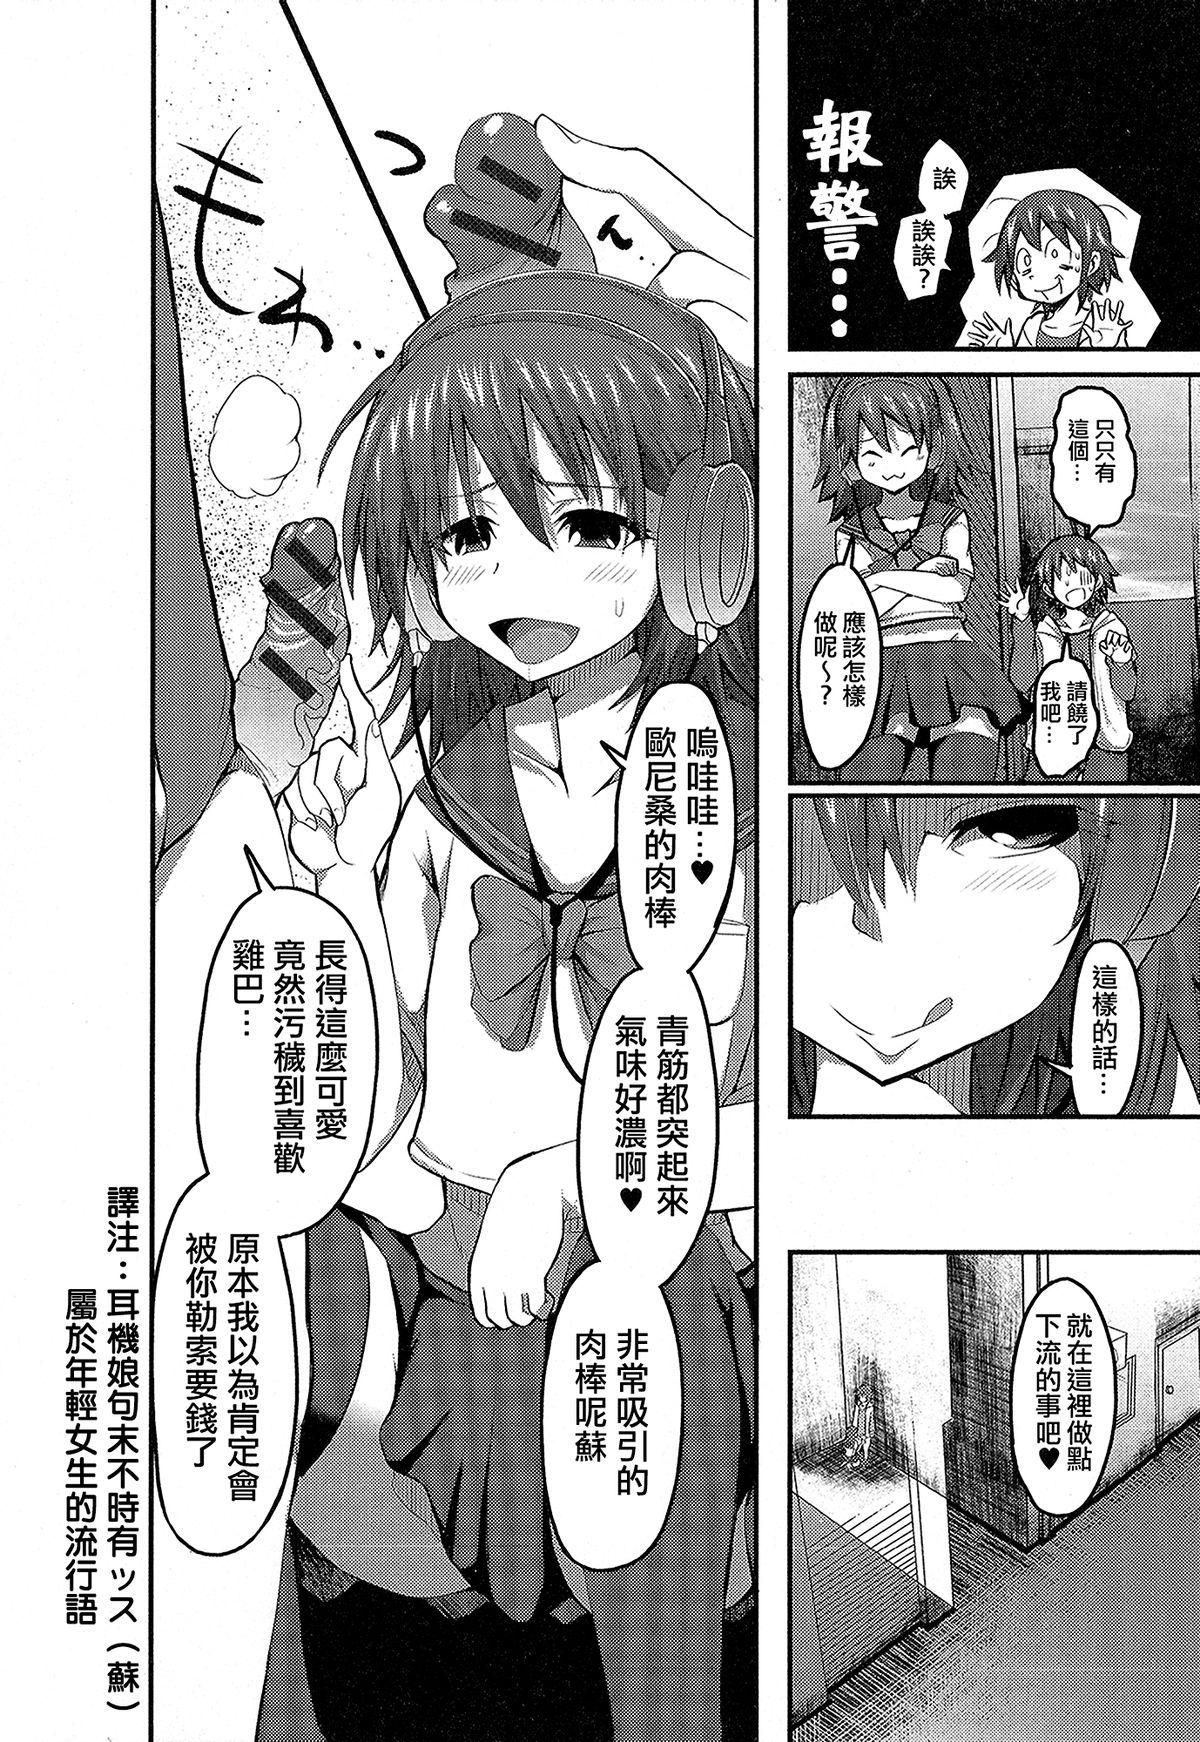 Japan Kiraku in Yaro Fingering - Page 4